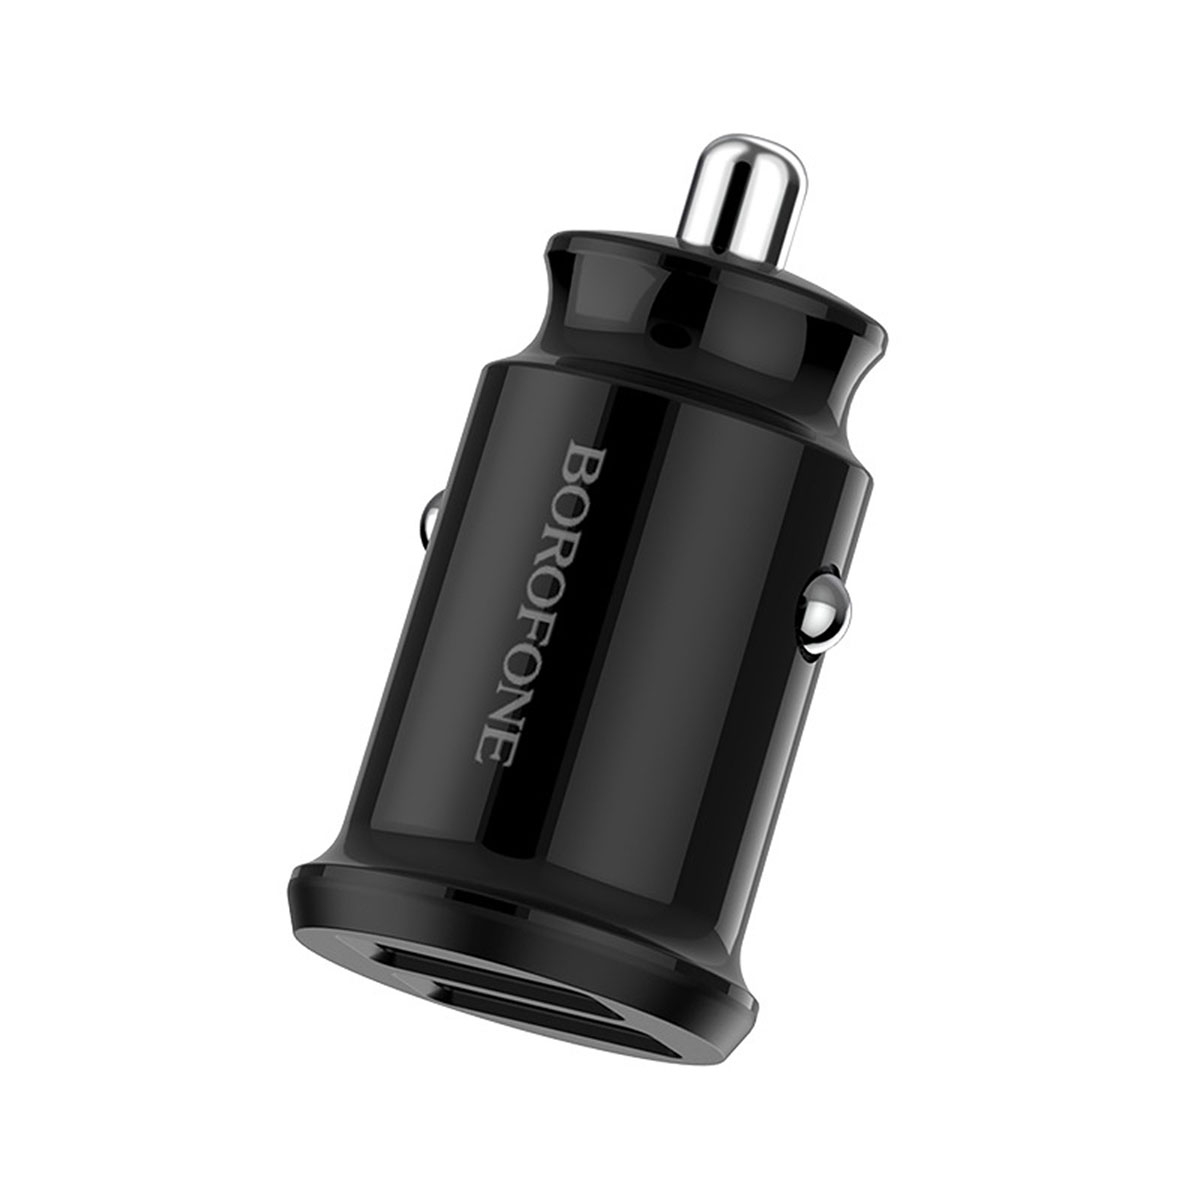 АЗУ (Автомобильное зарядное устройство) BOROFONE BZ8 MaxRide, с двумя USB портами, 2.4 А, цвет черный.